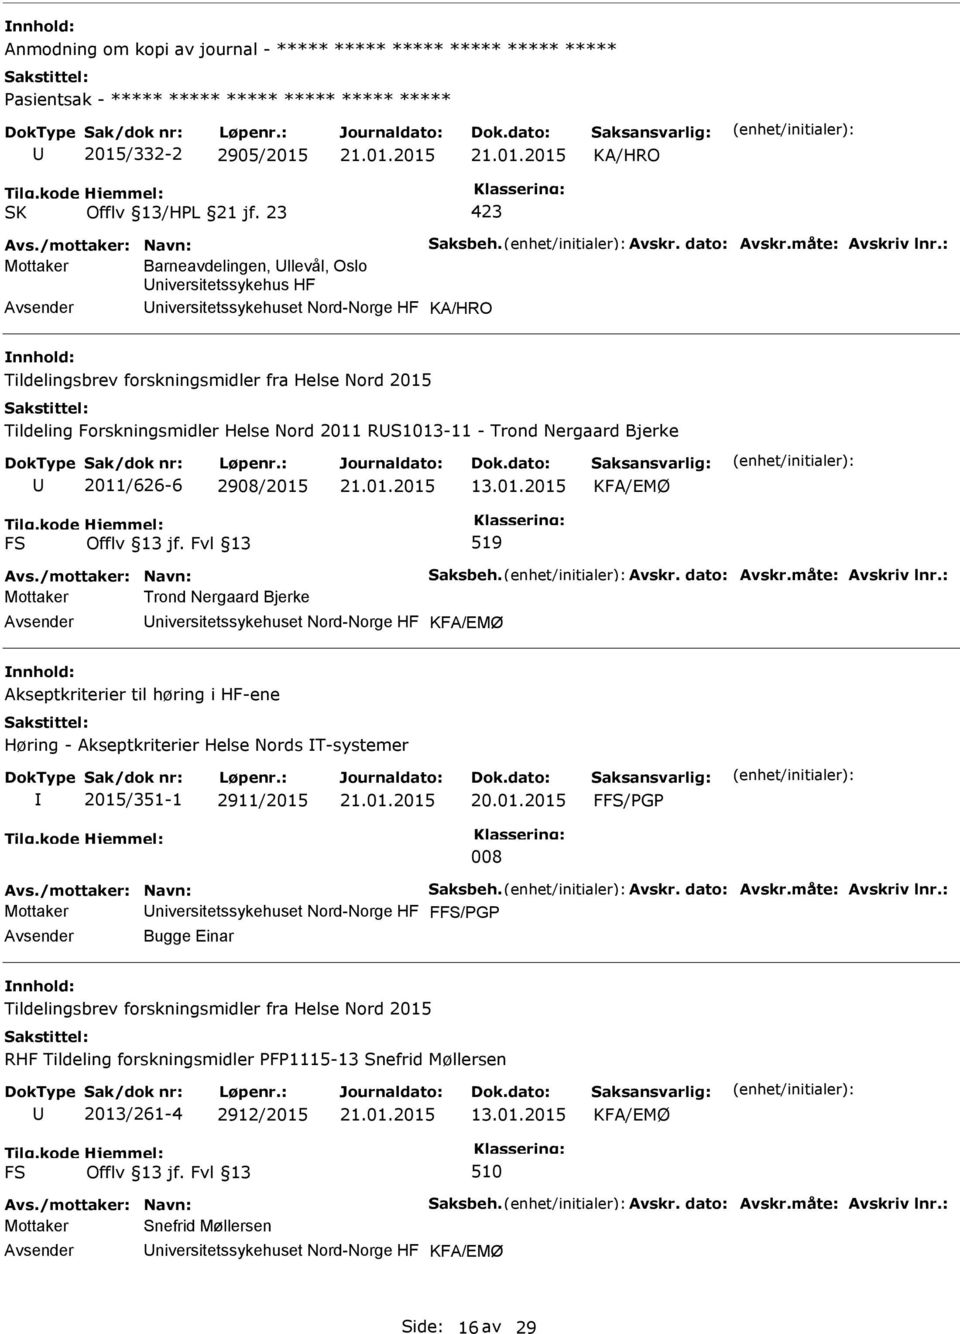 RS1013-11 - Trond Nergaard Bjerke 2011/626-6 2908/2015 FS 519 Mottaker Trond Nergaard Bjerke niversitetssykehuset Nord-Norge HF Akseptkriterier til høring i HF-ene Høring - Akseptkriterier Helse